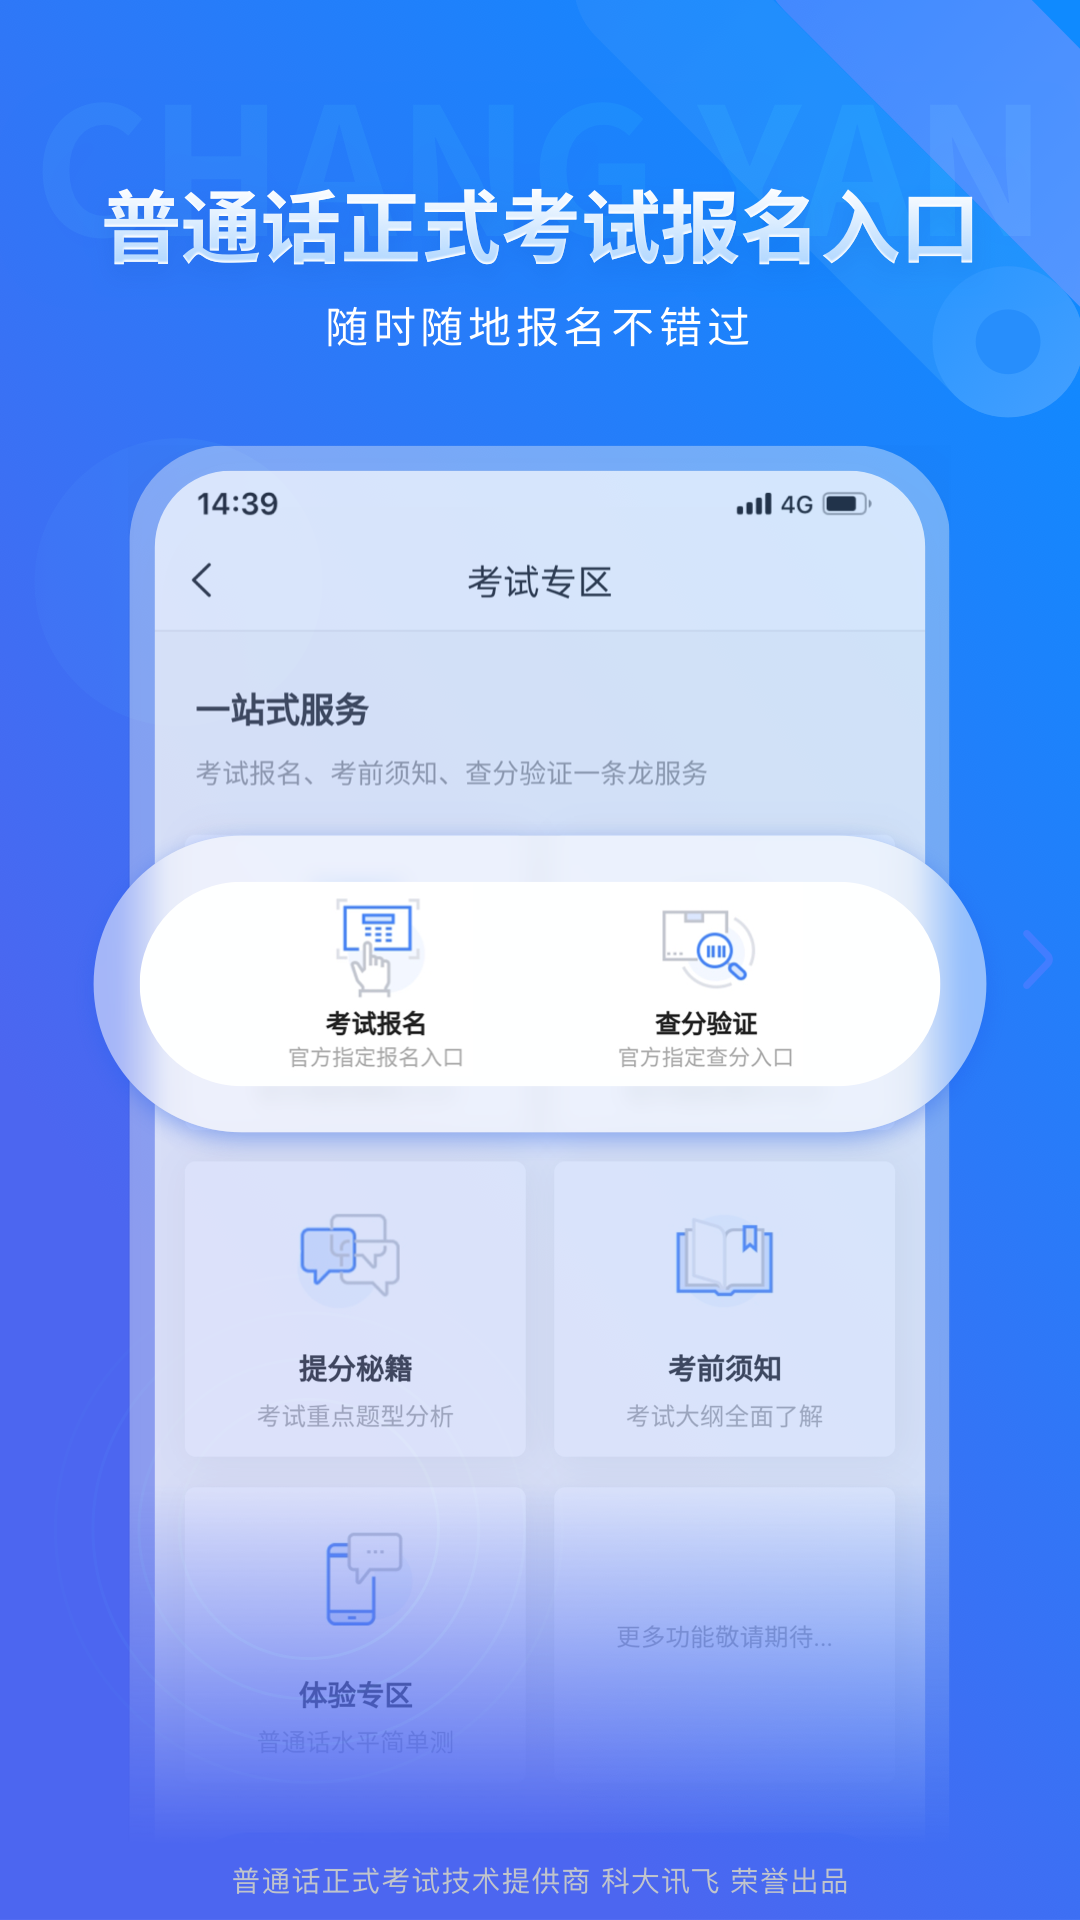 畅言普通话苹果手机版 v5.0.1060 官方版1